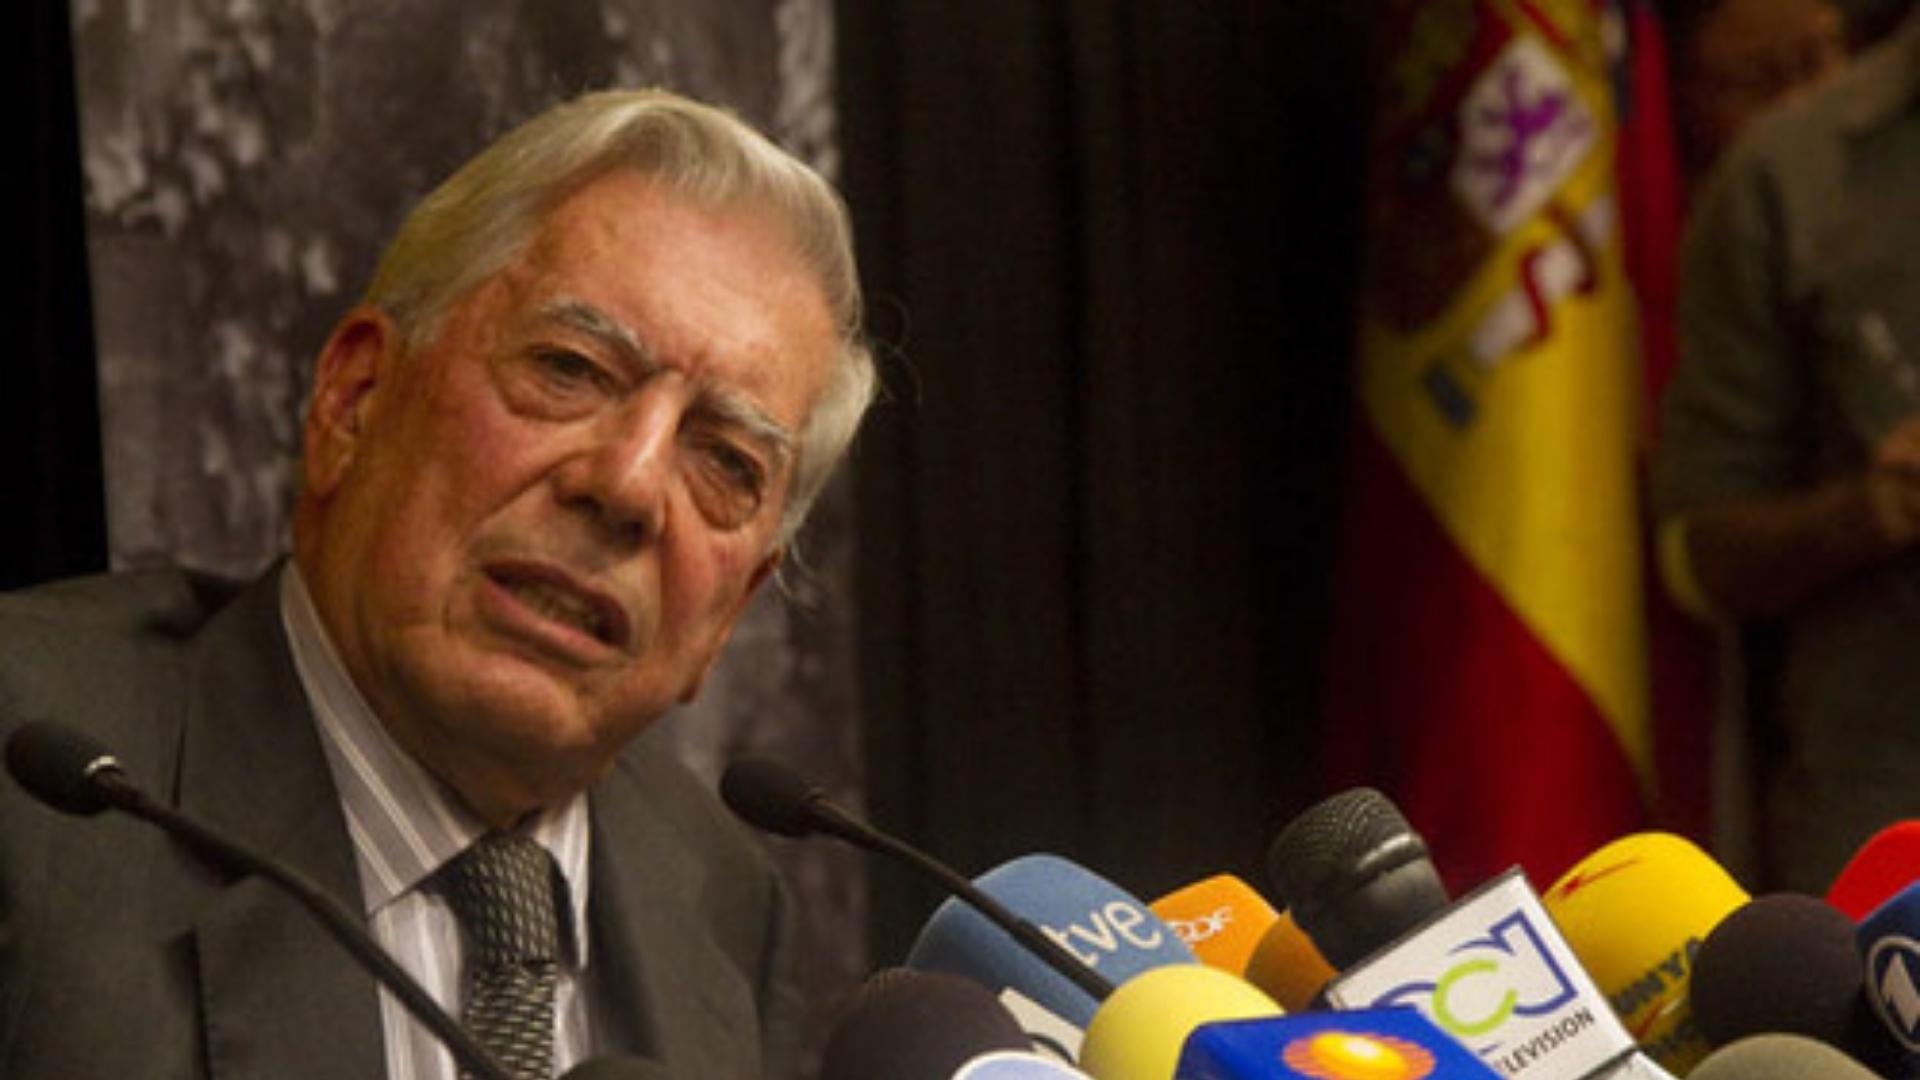 Mario Vargas Llosa quiere volver a una Cuba libre